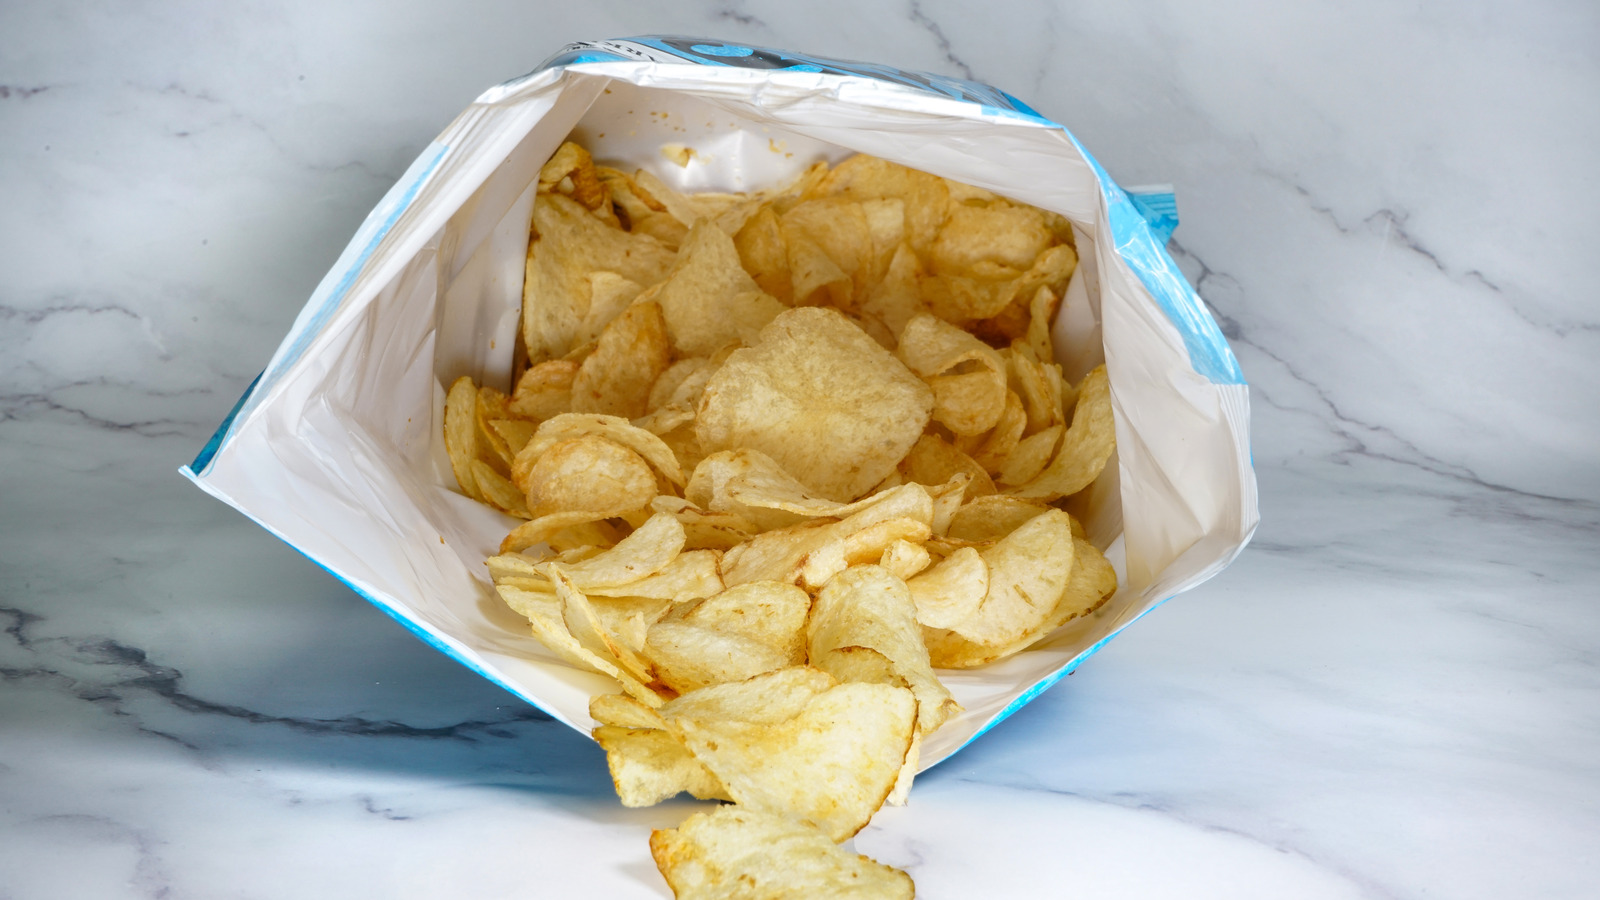 Shrinking Chip Bag - Steve Spangler